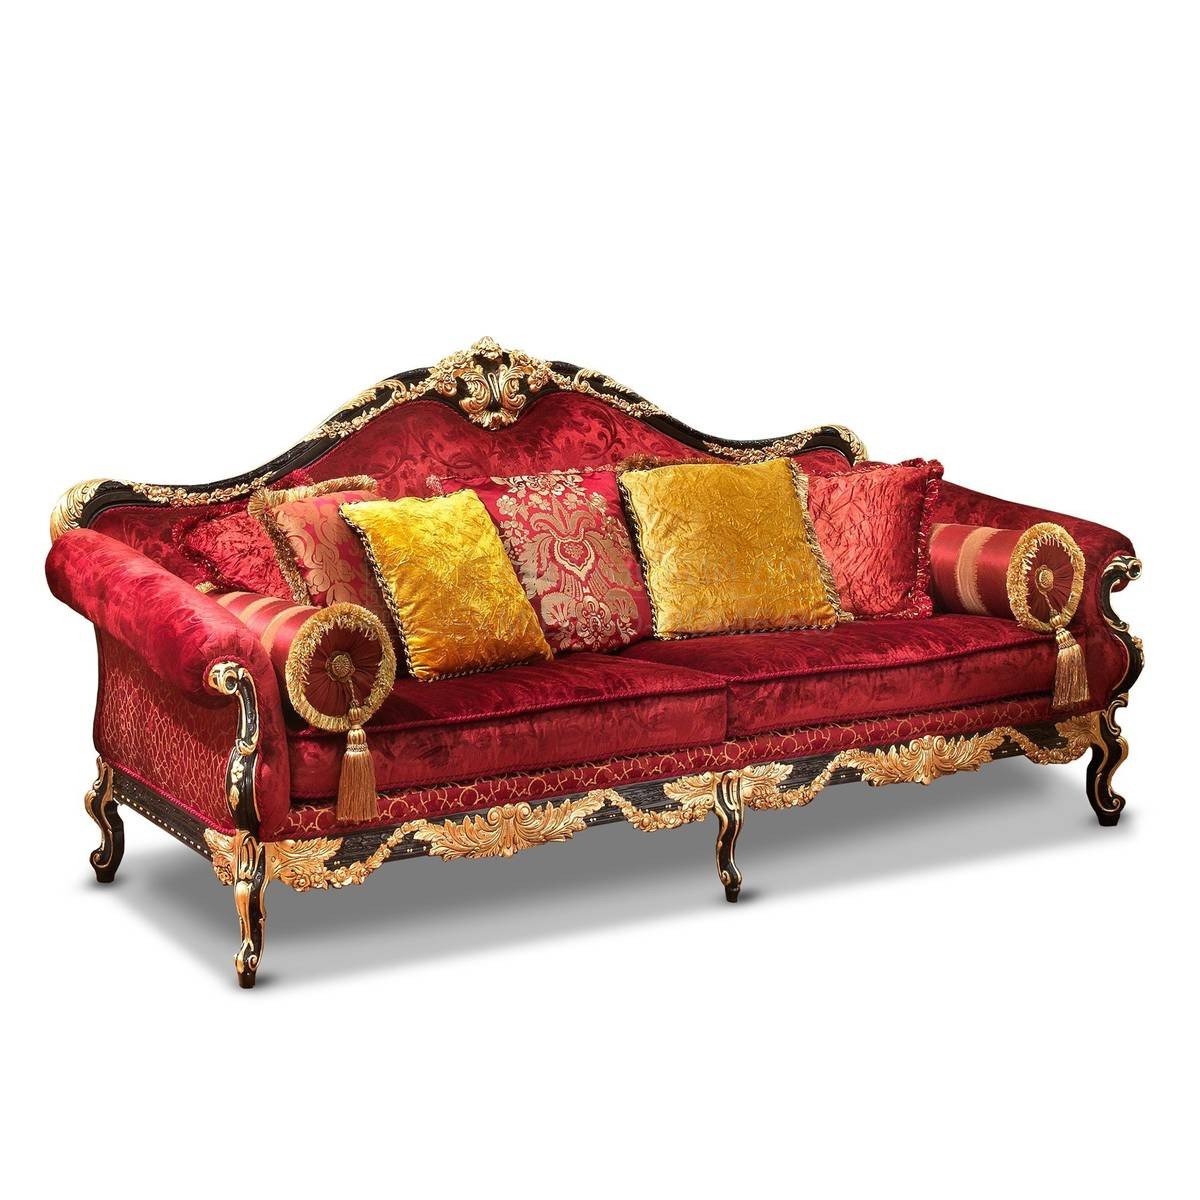 Прямой диван The Upholstery/D455 из Италии фабрики FRANCESCO MOLON